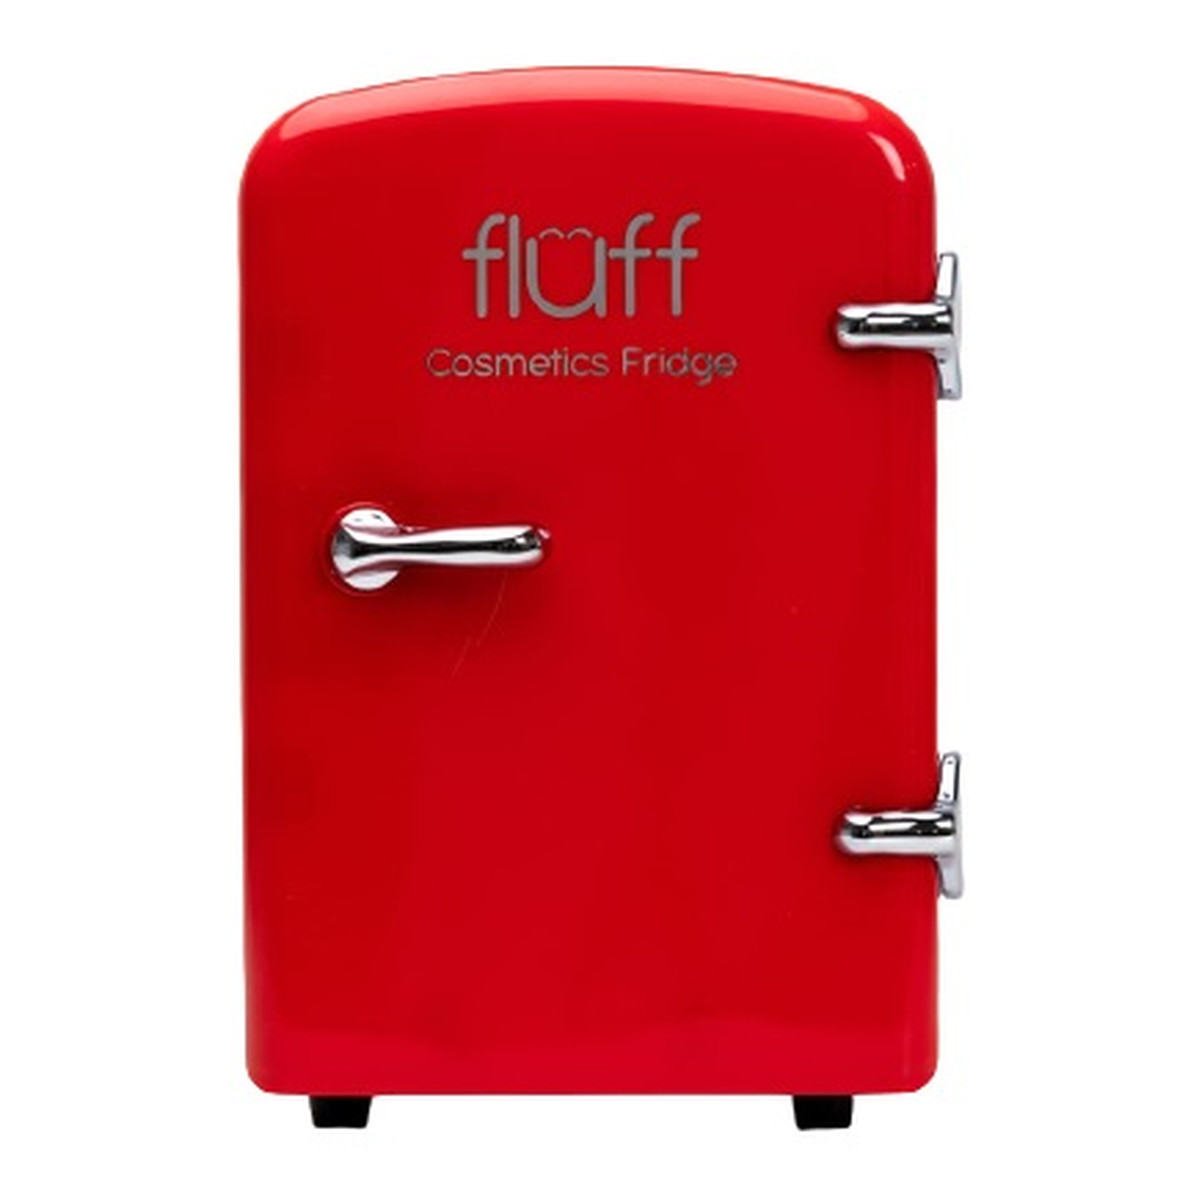 Fluff Cosmetics fridge lodówka kosmetyczna czerwona